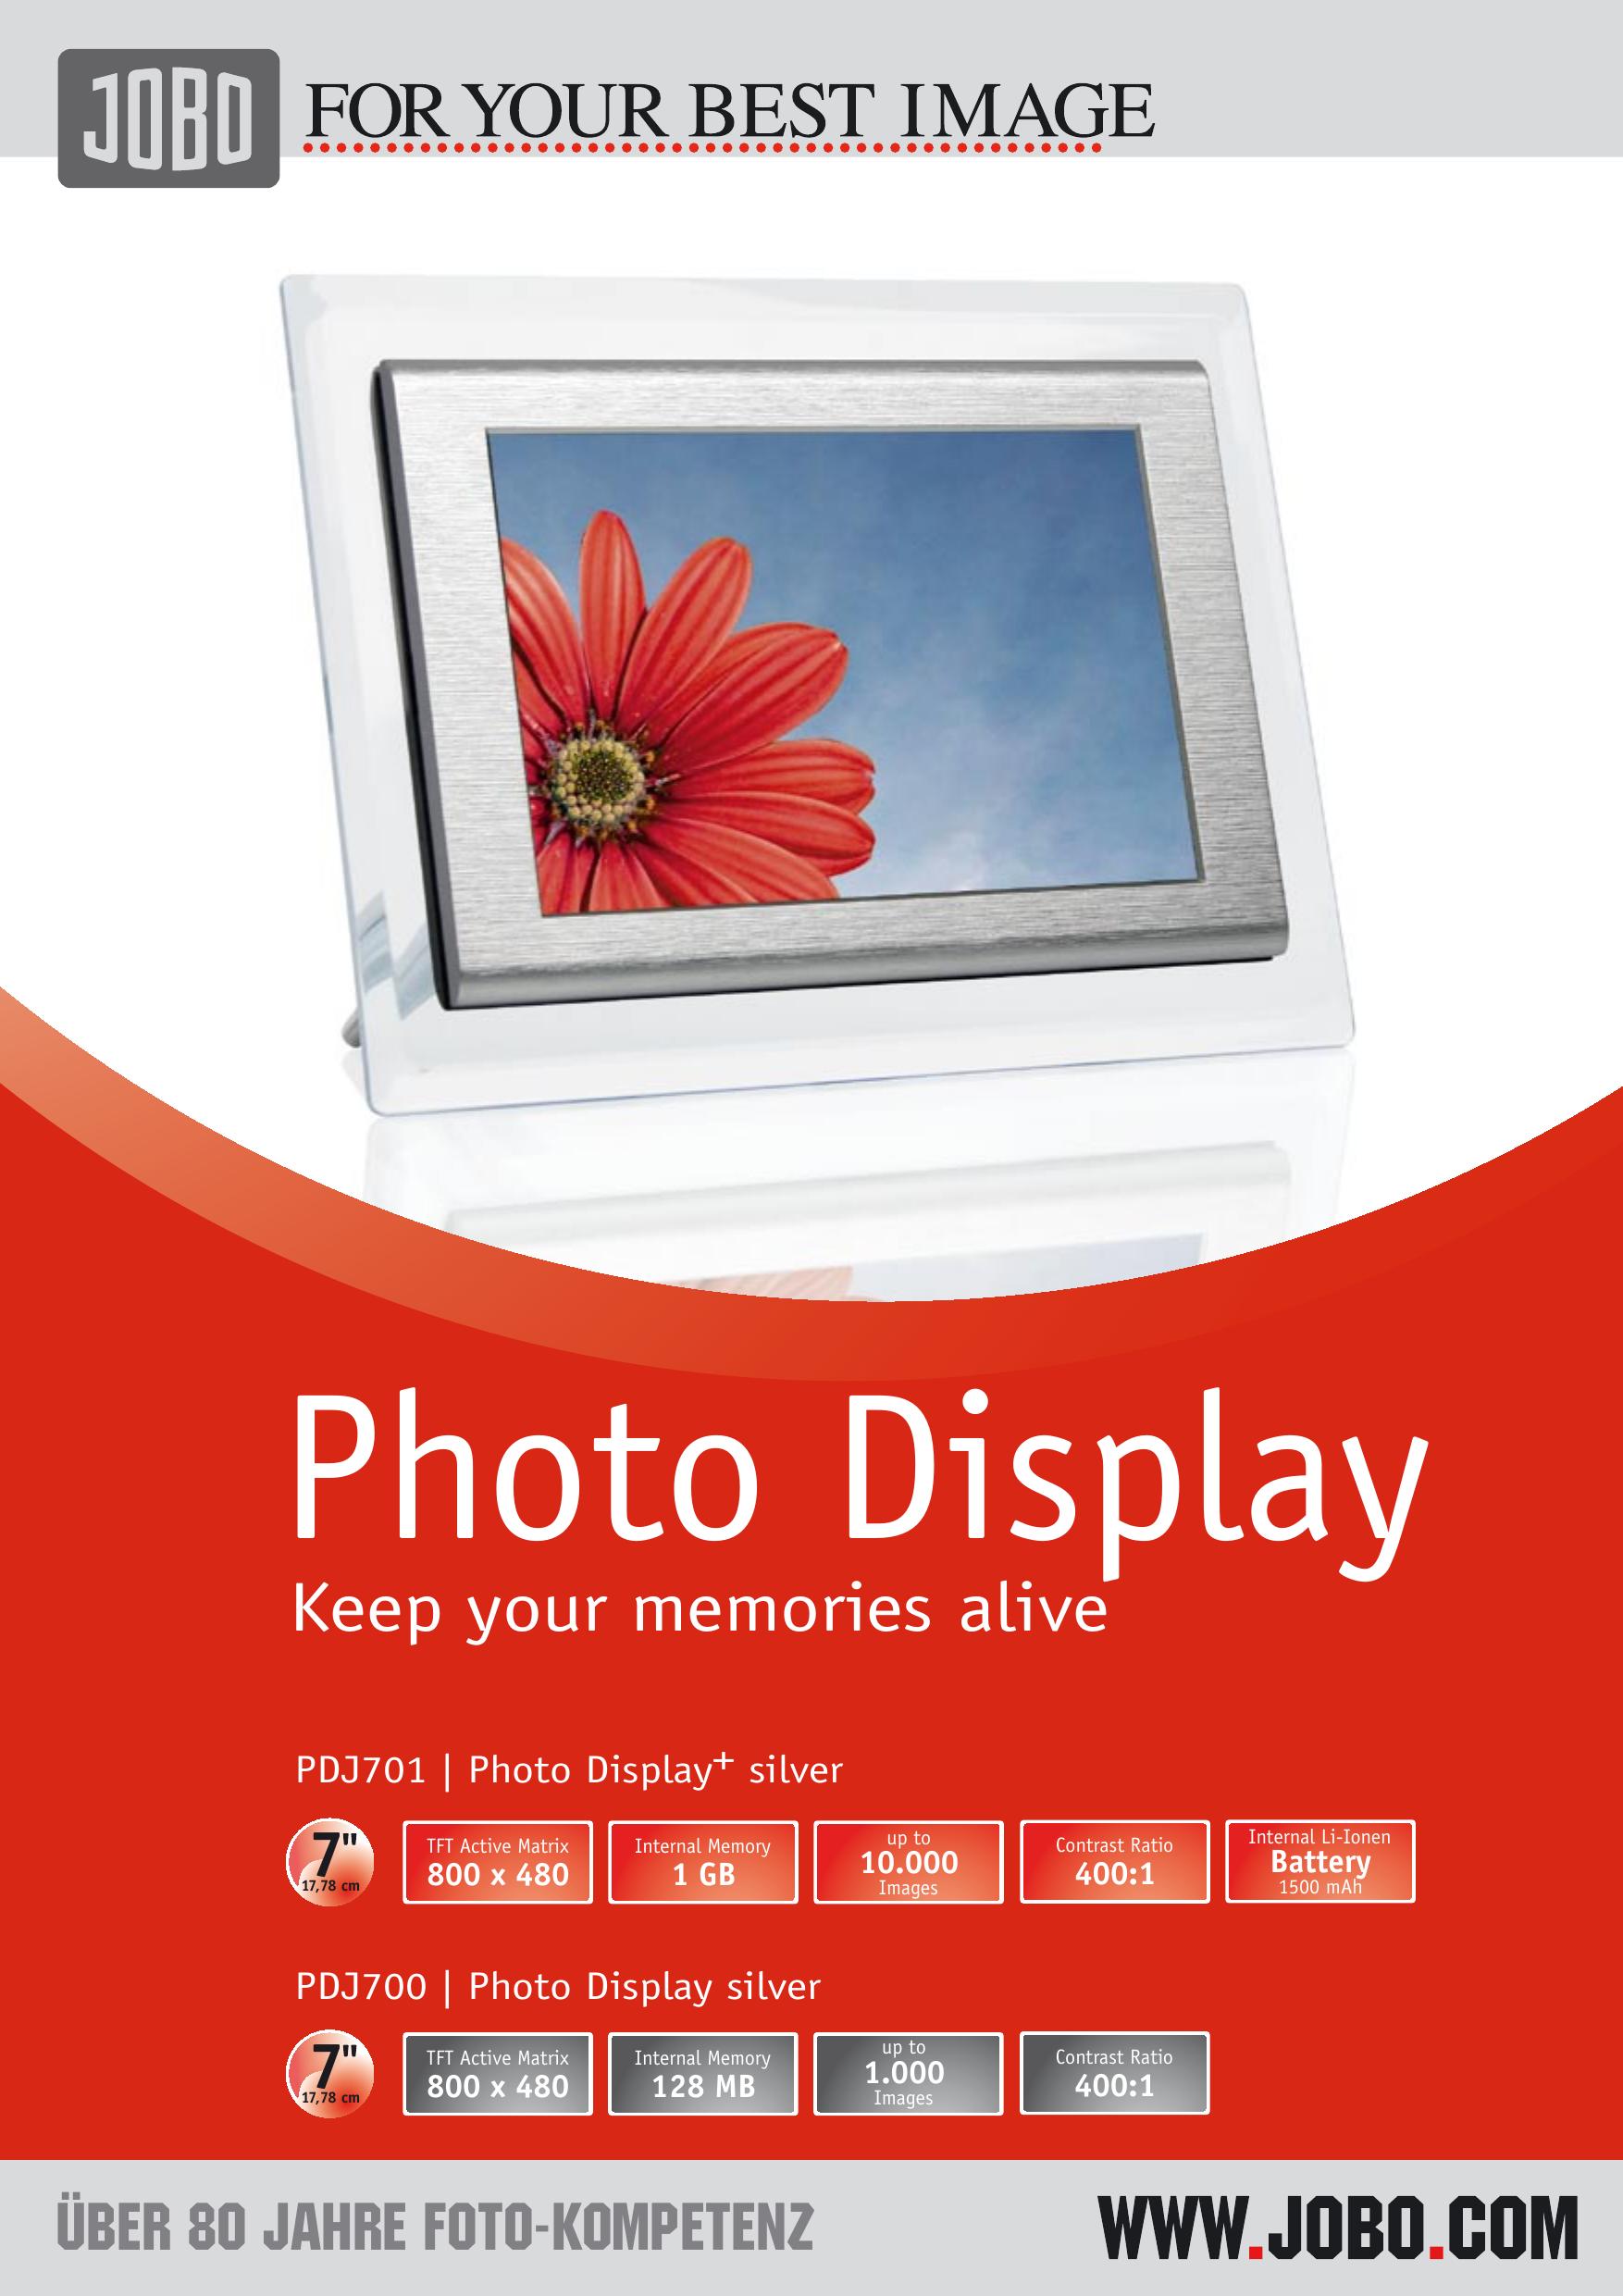 JOBO PDJ700 Digital Photo Frame User Manual